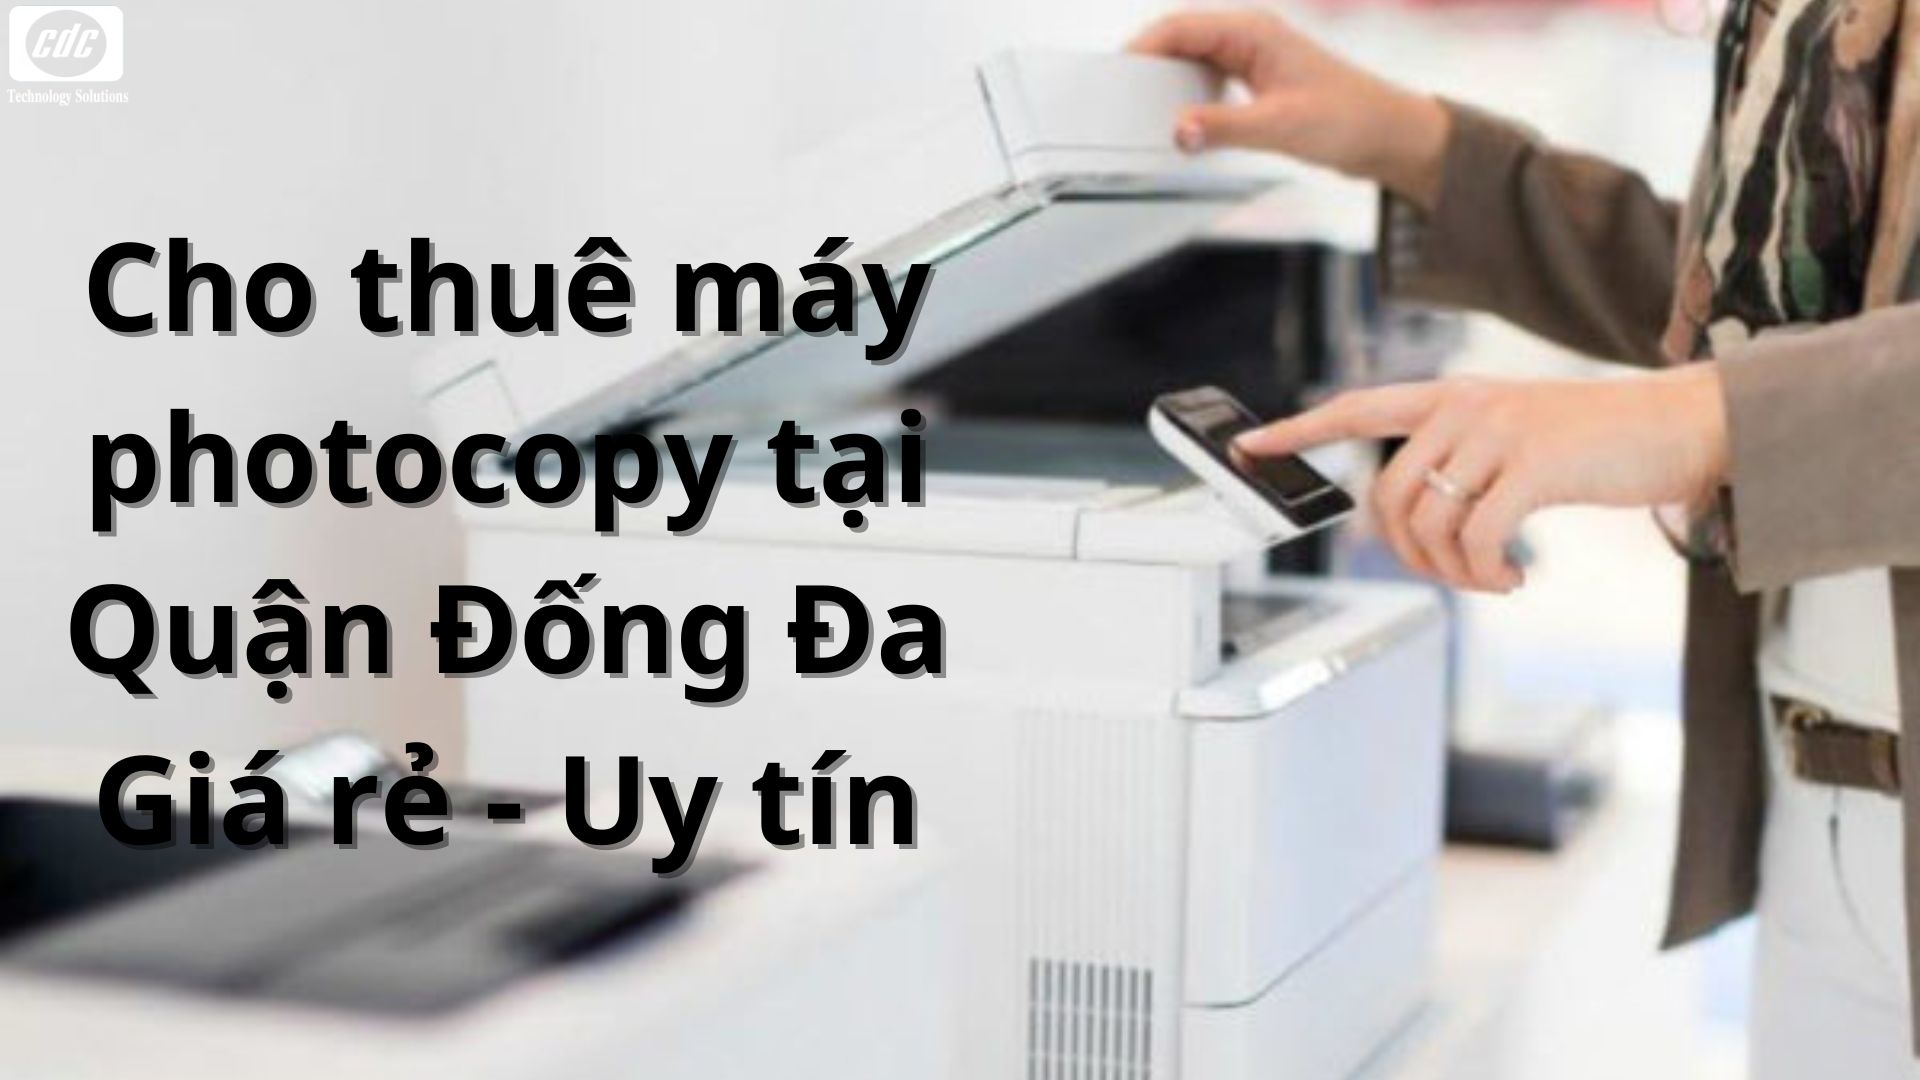 cho-thue-may-photocopy-tai-quan-dong-da-01